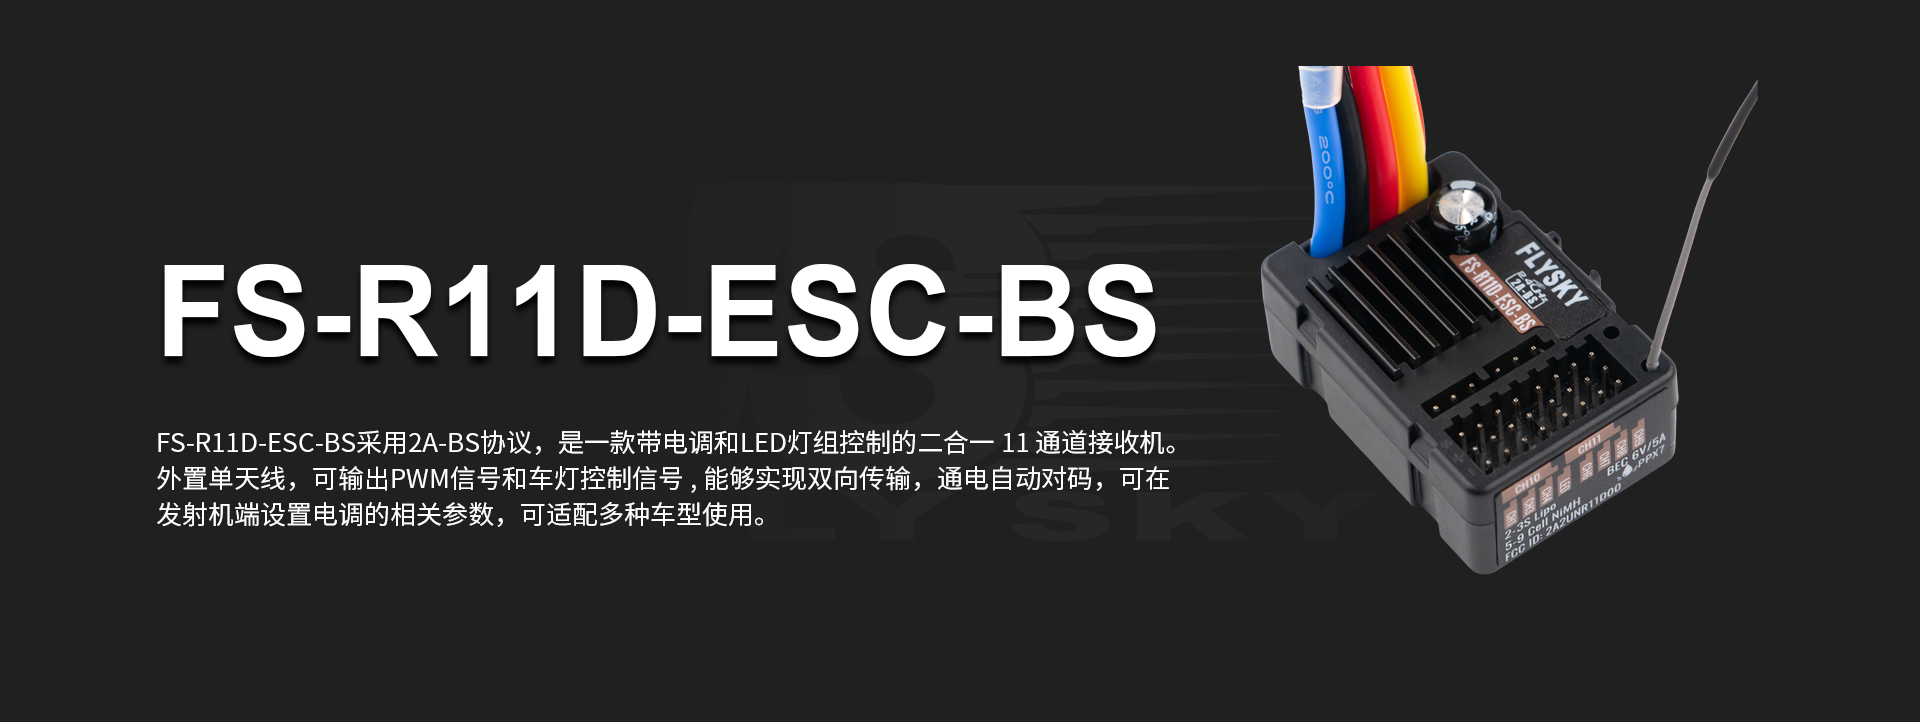 FS-R11D-ESC-BS